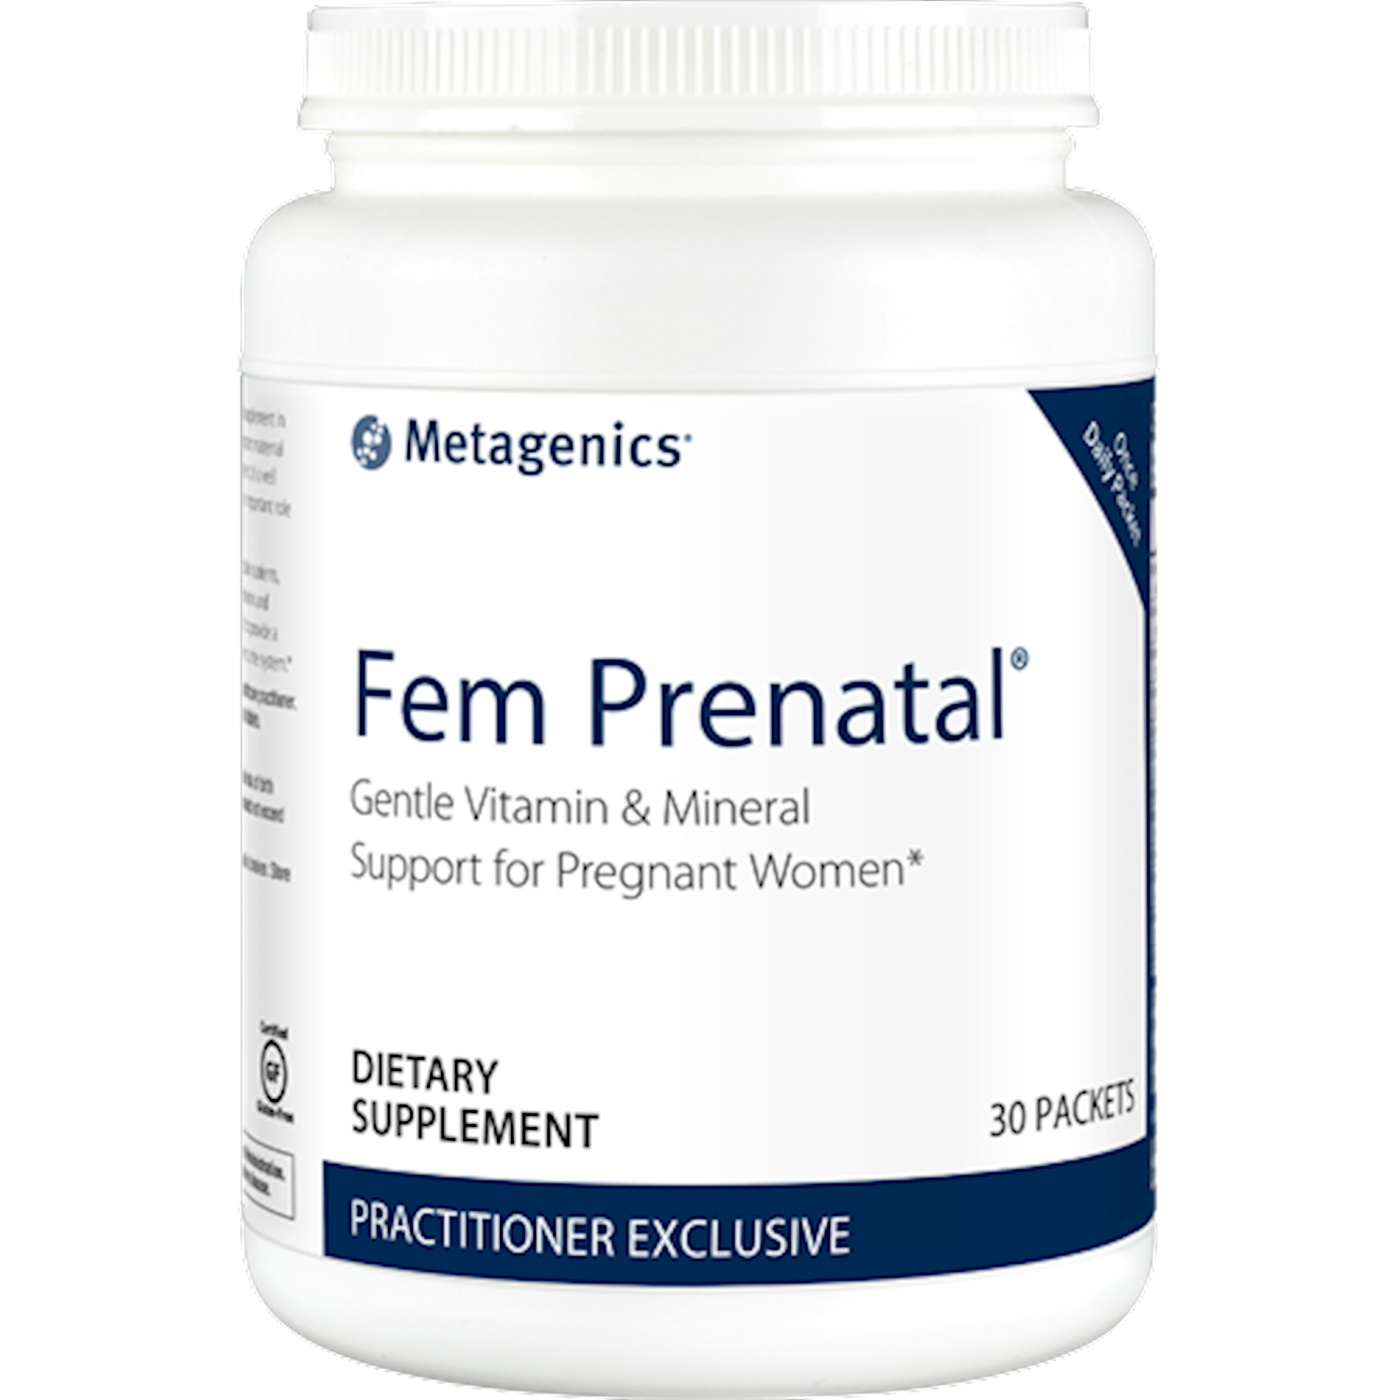 Fem Prenatal s Curated Wellness